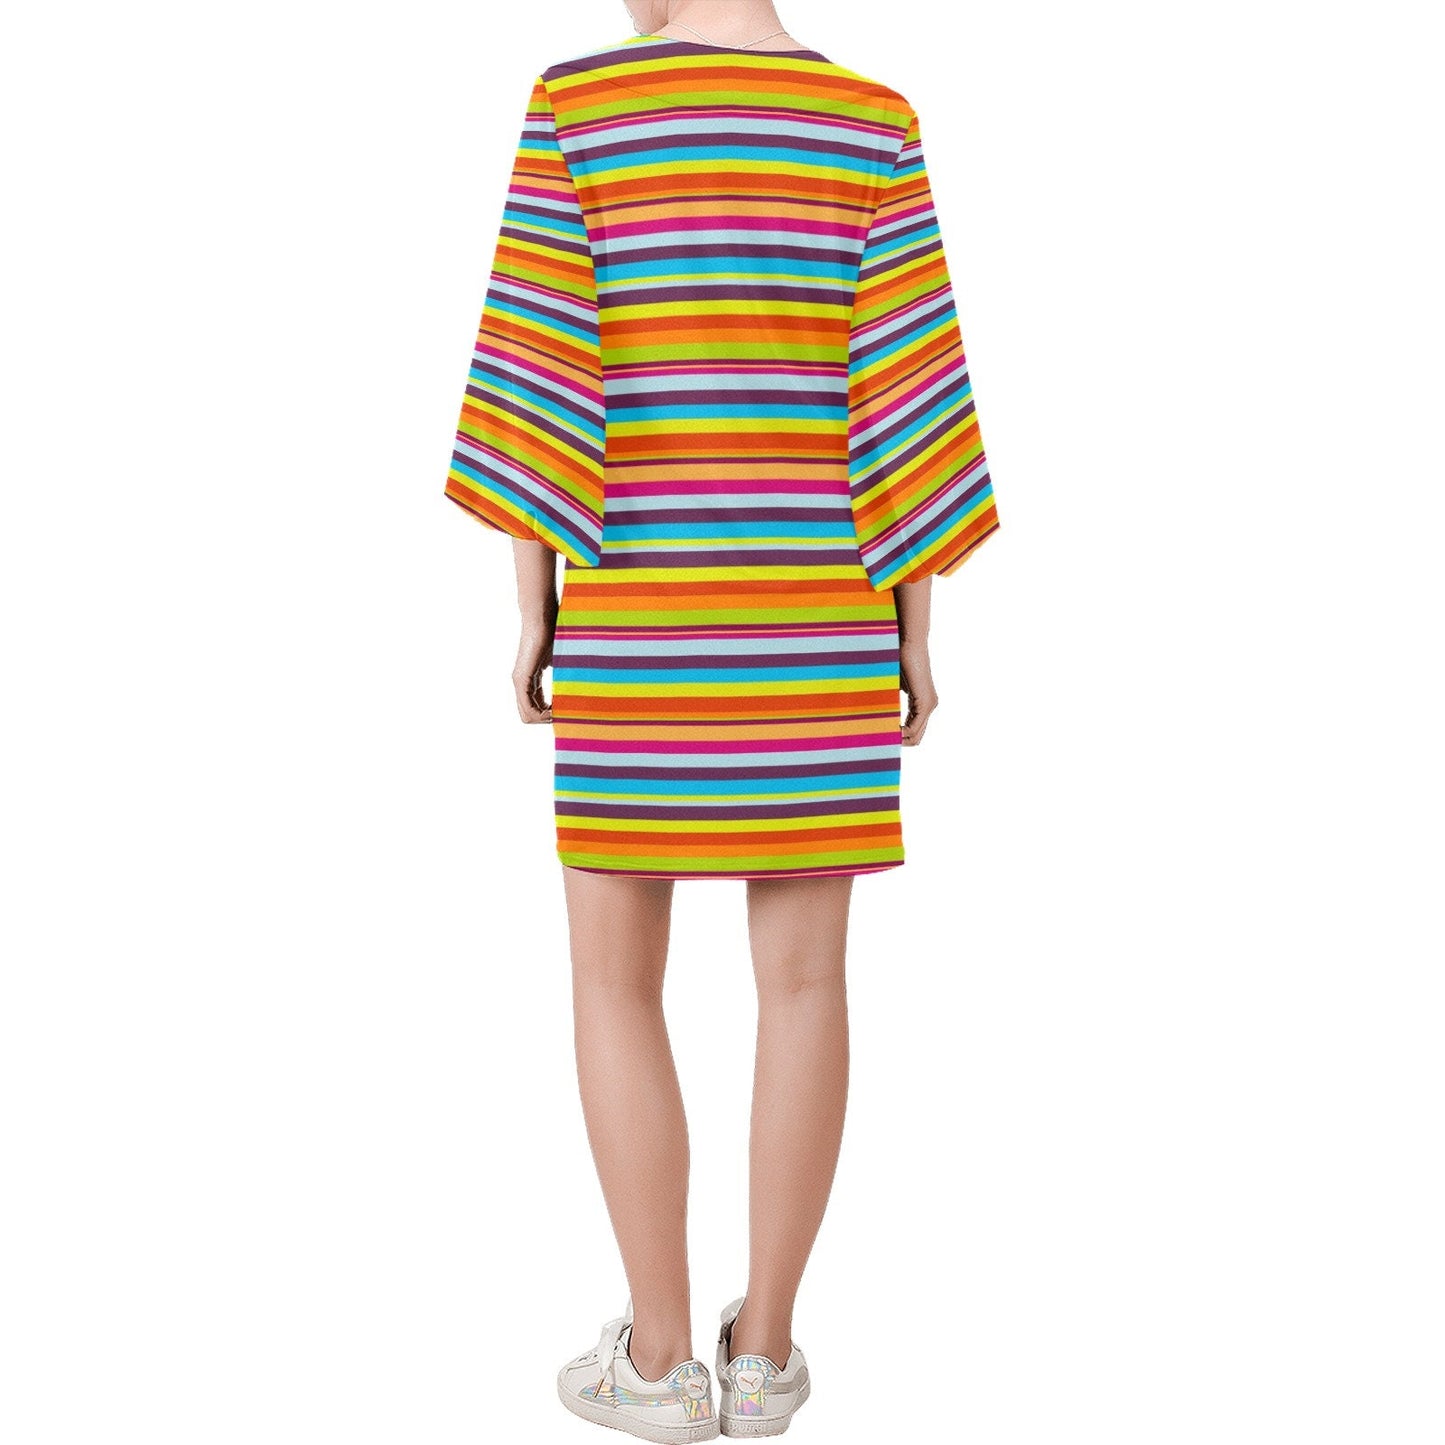 Streifenkleid, Retro-Kleid, Retro-Kleid, Kleid im 70er-Jahre-Stil, Kleid mit Glockenärmeln, mehrfarbiges Streifenkleid, Hippie-Kleid, Etuikleid, Vintage-inspiriert